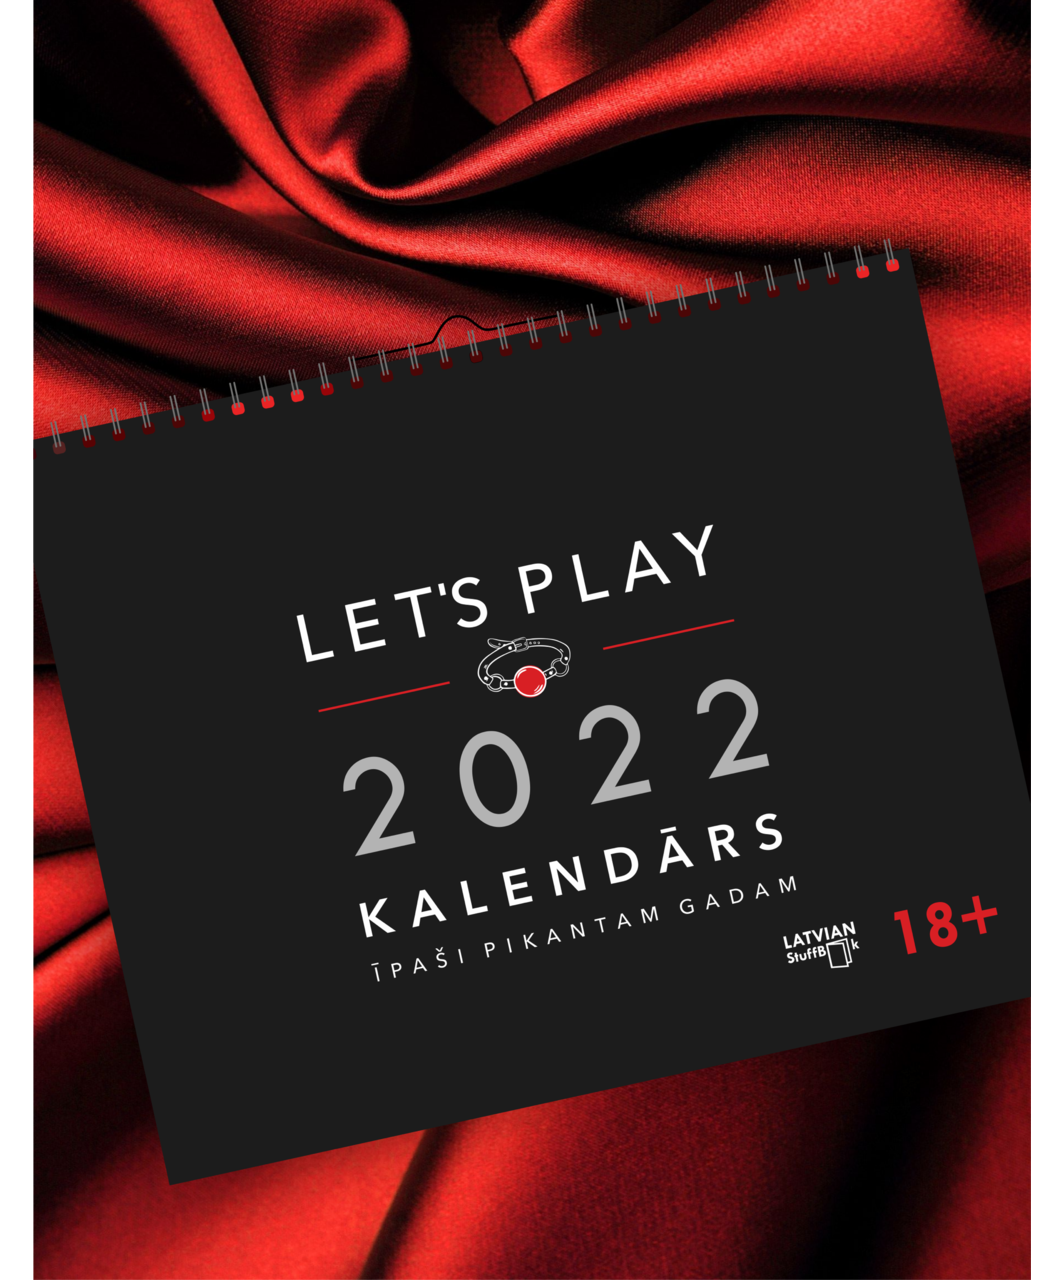 Latvian StuffBook Let's play kalendārs 2022 Īpaši pikantam gadam